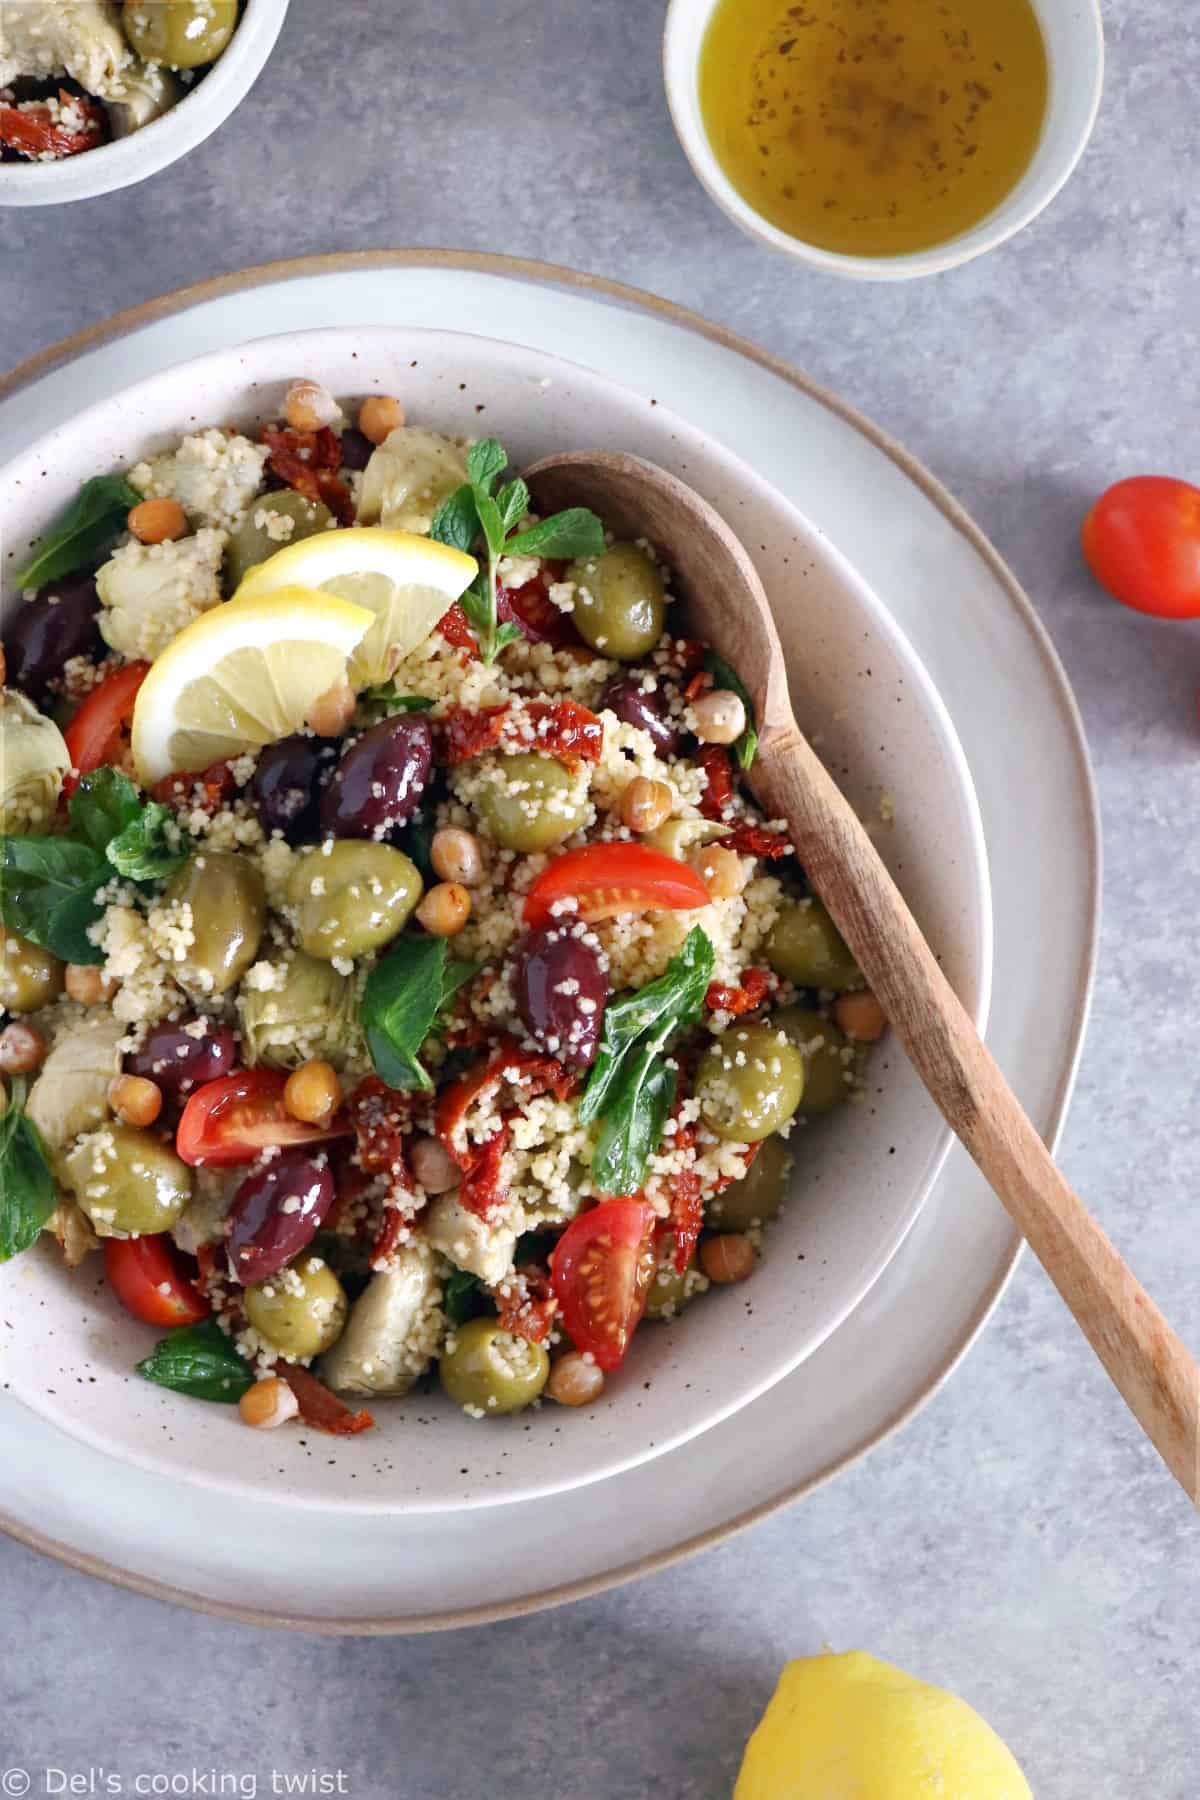 Salade de quinoa aux tomates séchées et amandes - 5 ingredients 15 minutes